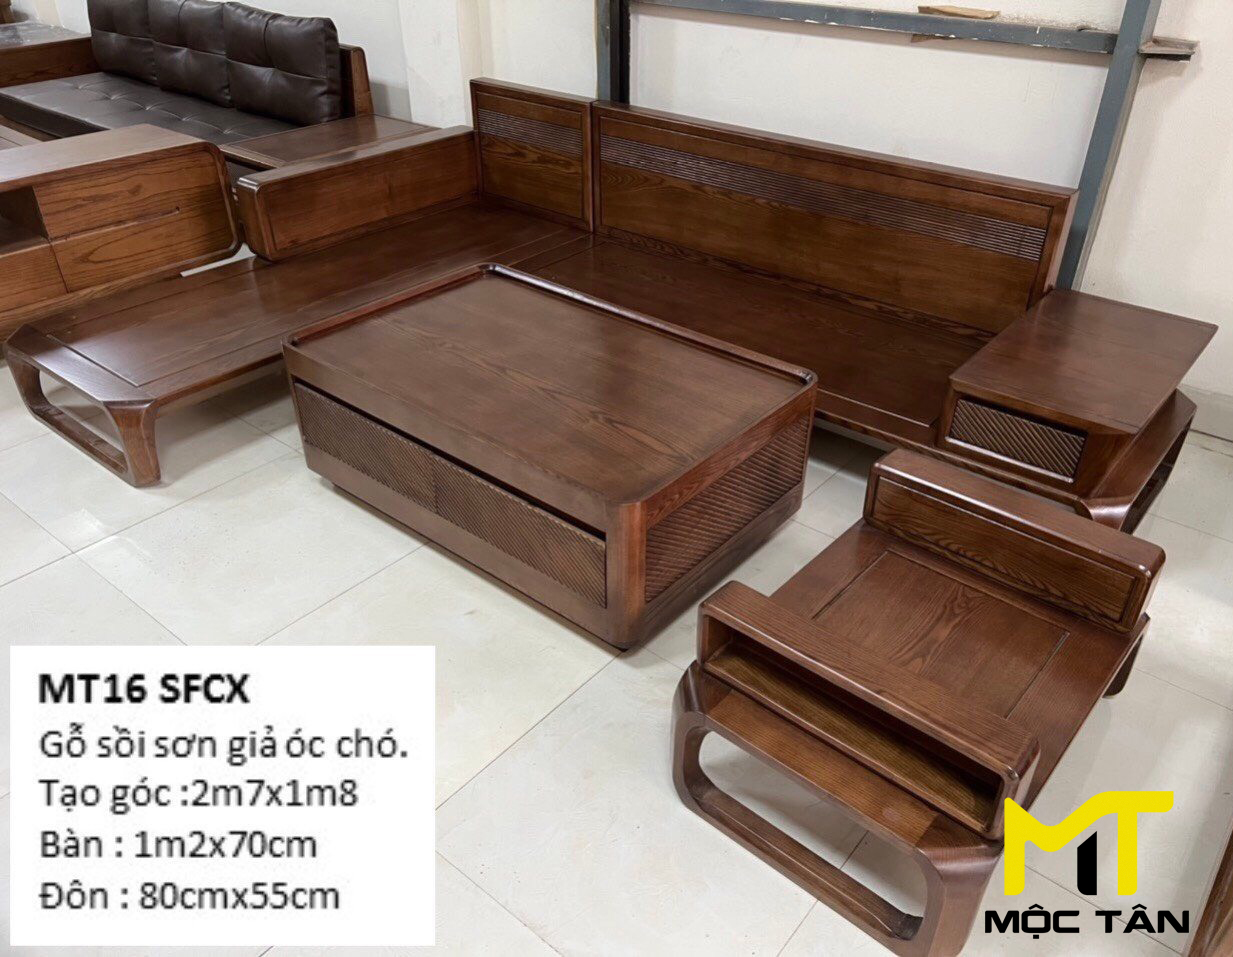 Sofa gỗ Sồi MT16 SFCX